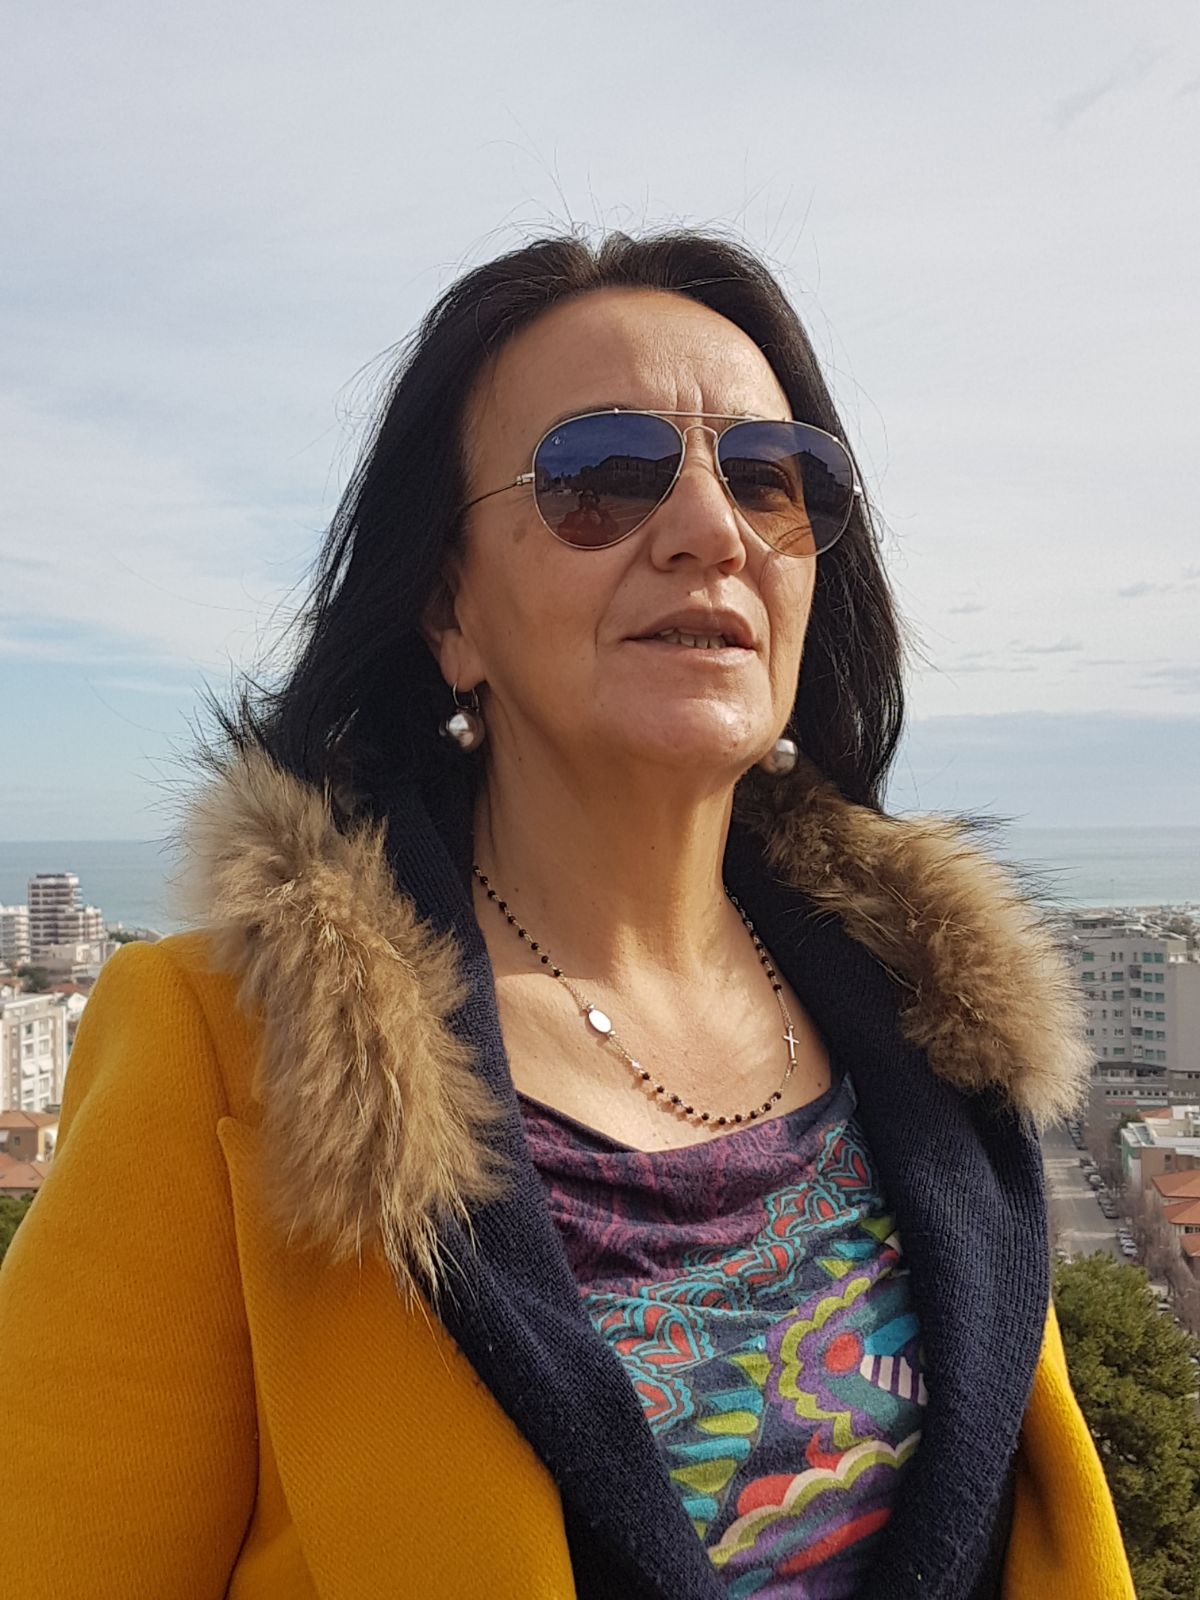 Si dimette l'assessora Cristina Canzanese, sindaco Mastromauro "Non posso accettare"